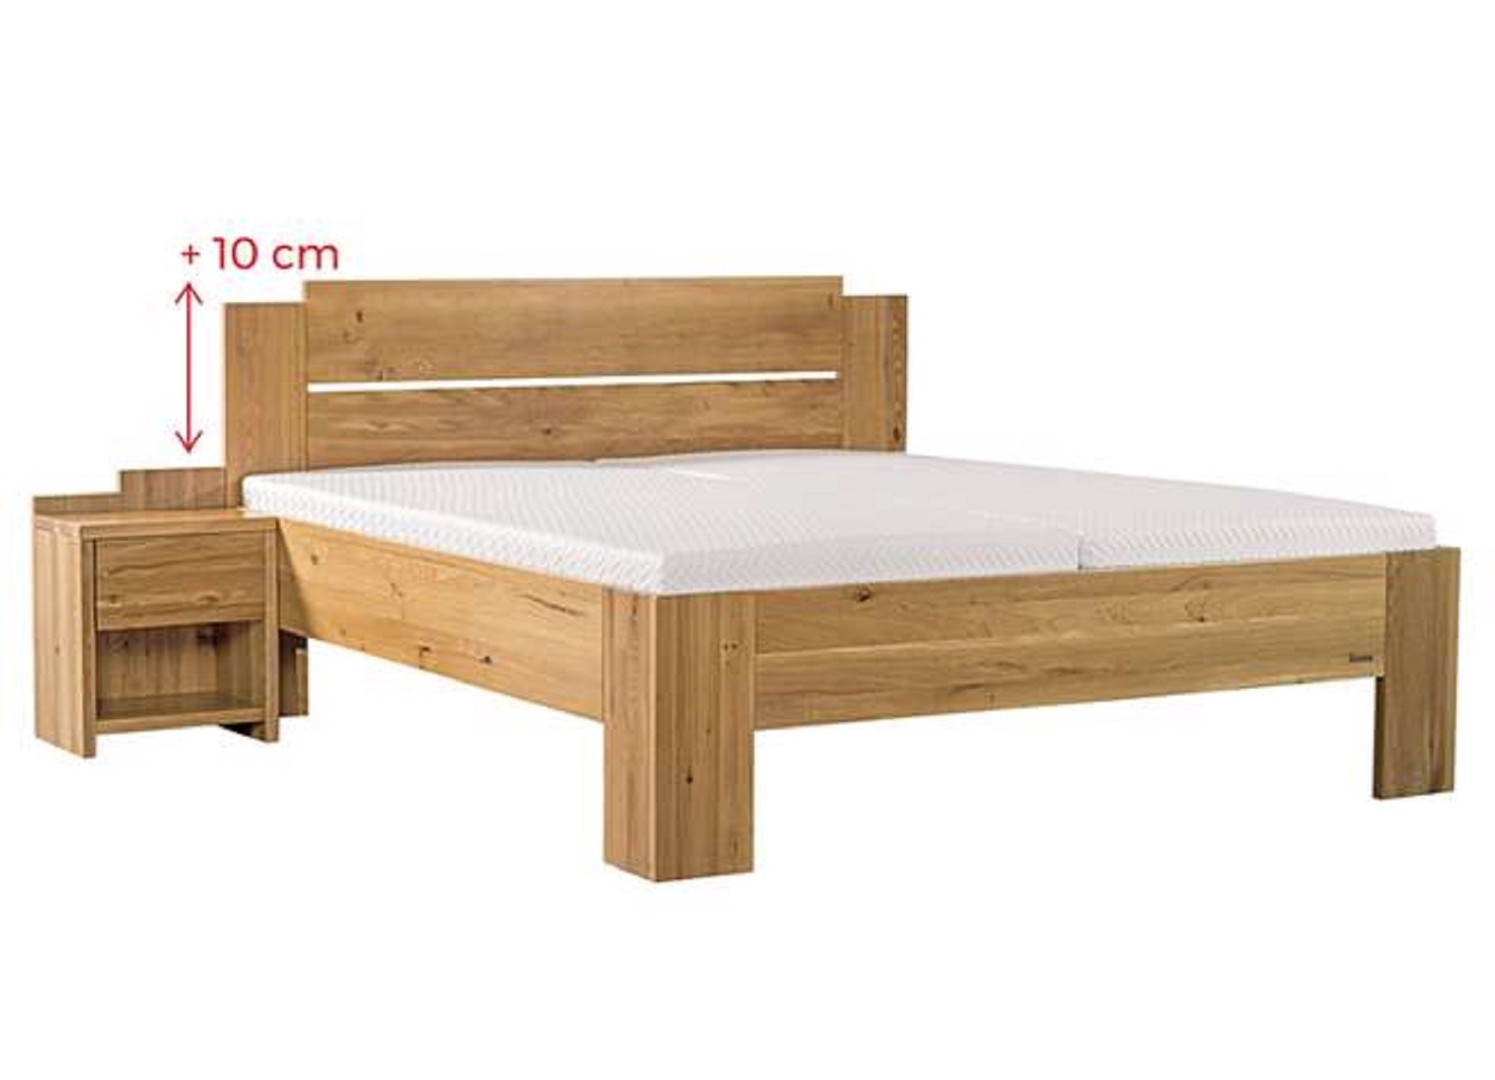 Ahorn GRADO MAX - masivní buková postel se zvýšeným čelem 120 x 200 cm, buk masiv